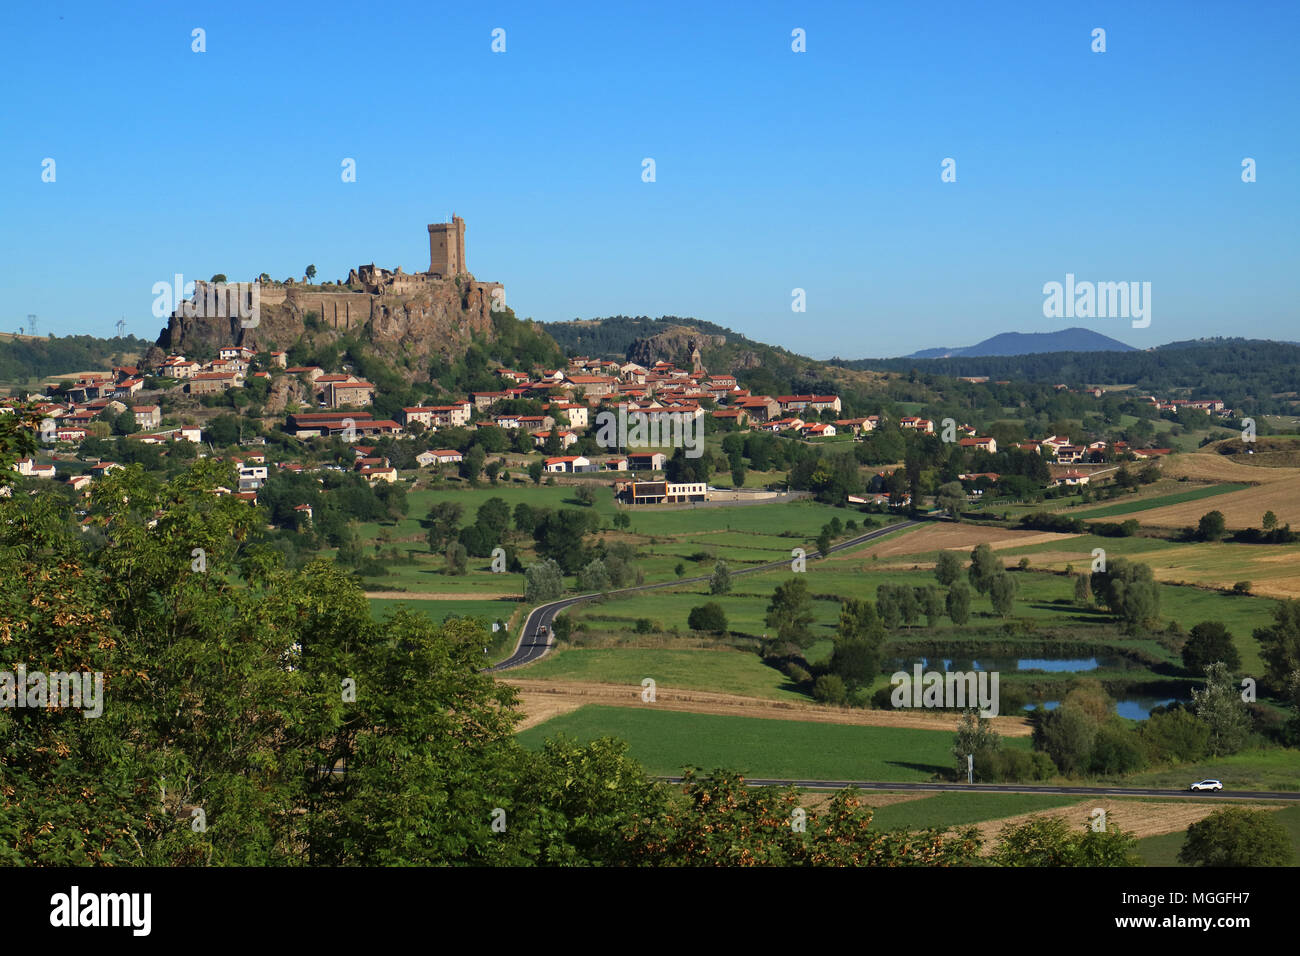 Vista della città di Polignac, vicino a Le Puy-en-Velay,dominato dal 'Fortresse de Polignac' con il suo torrione quadrato torre, 32 m di altezza, Auvergne, Francia Foto Stock